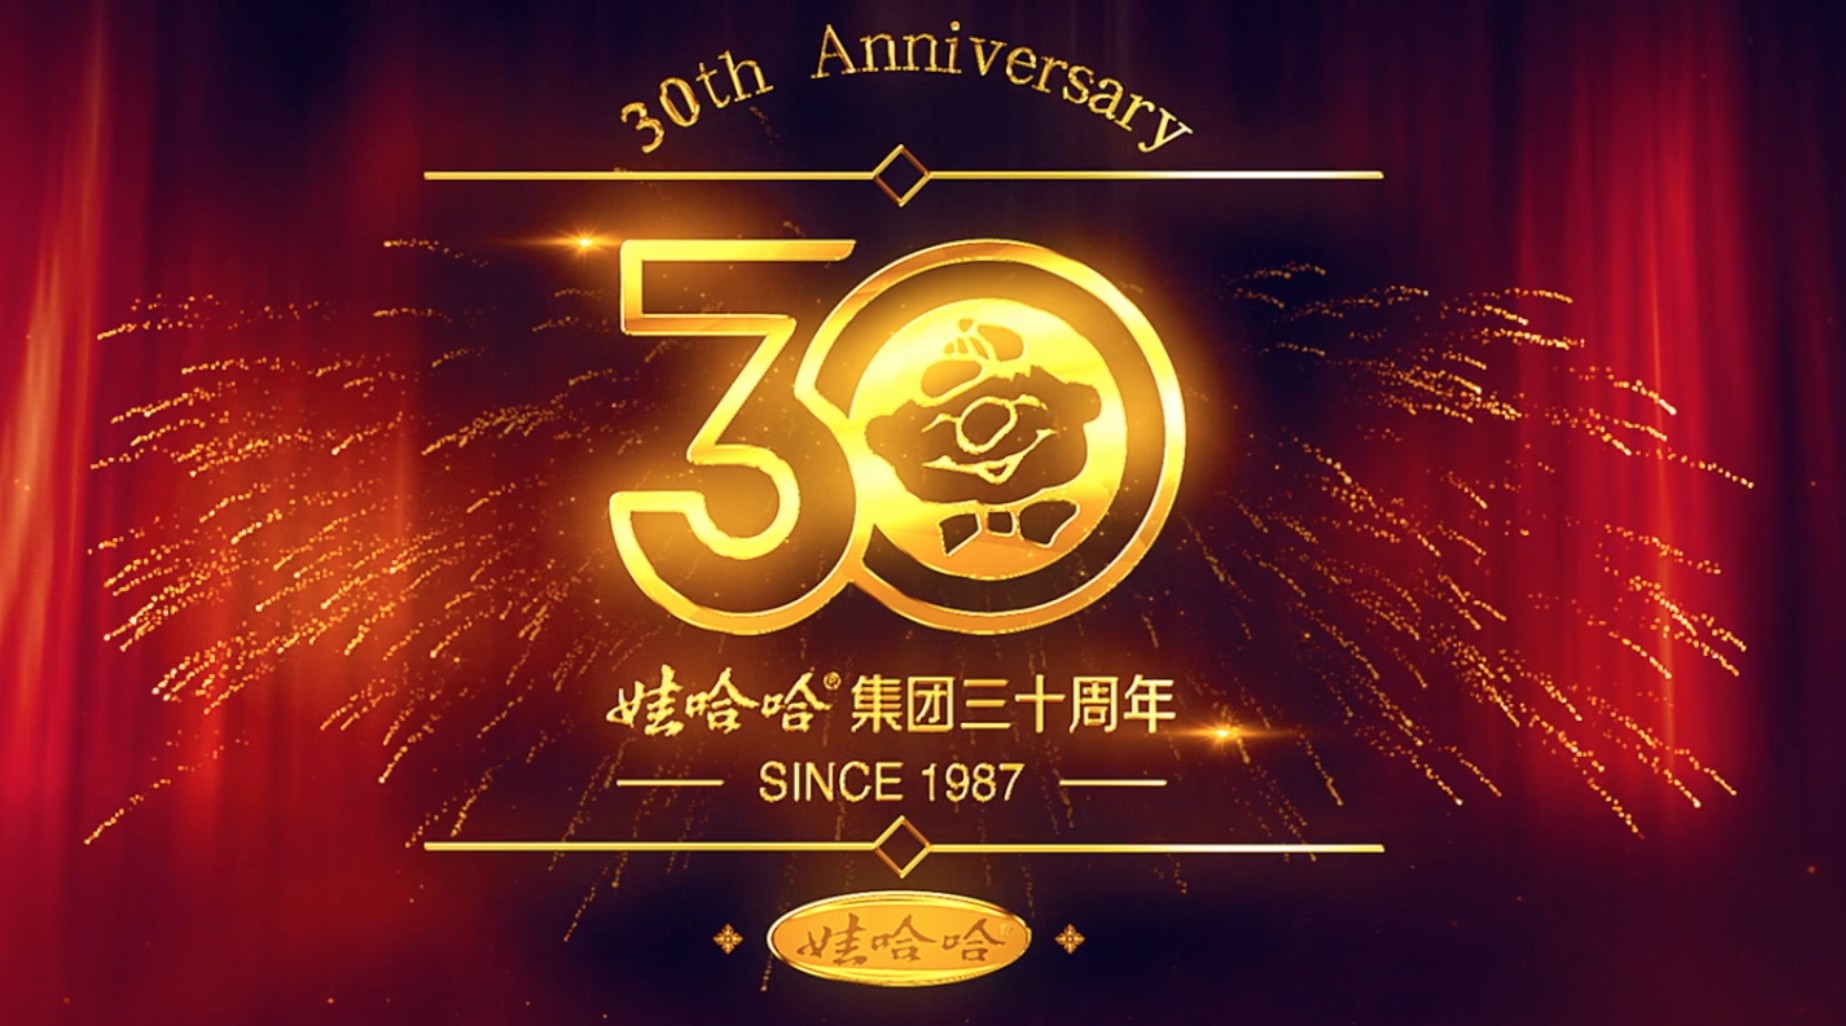 娃哈哈30周年庆 展厅宣传片 